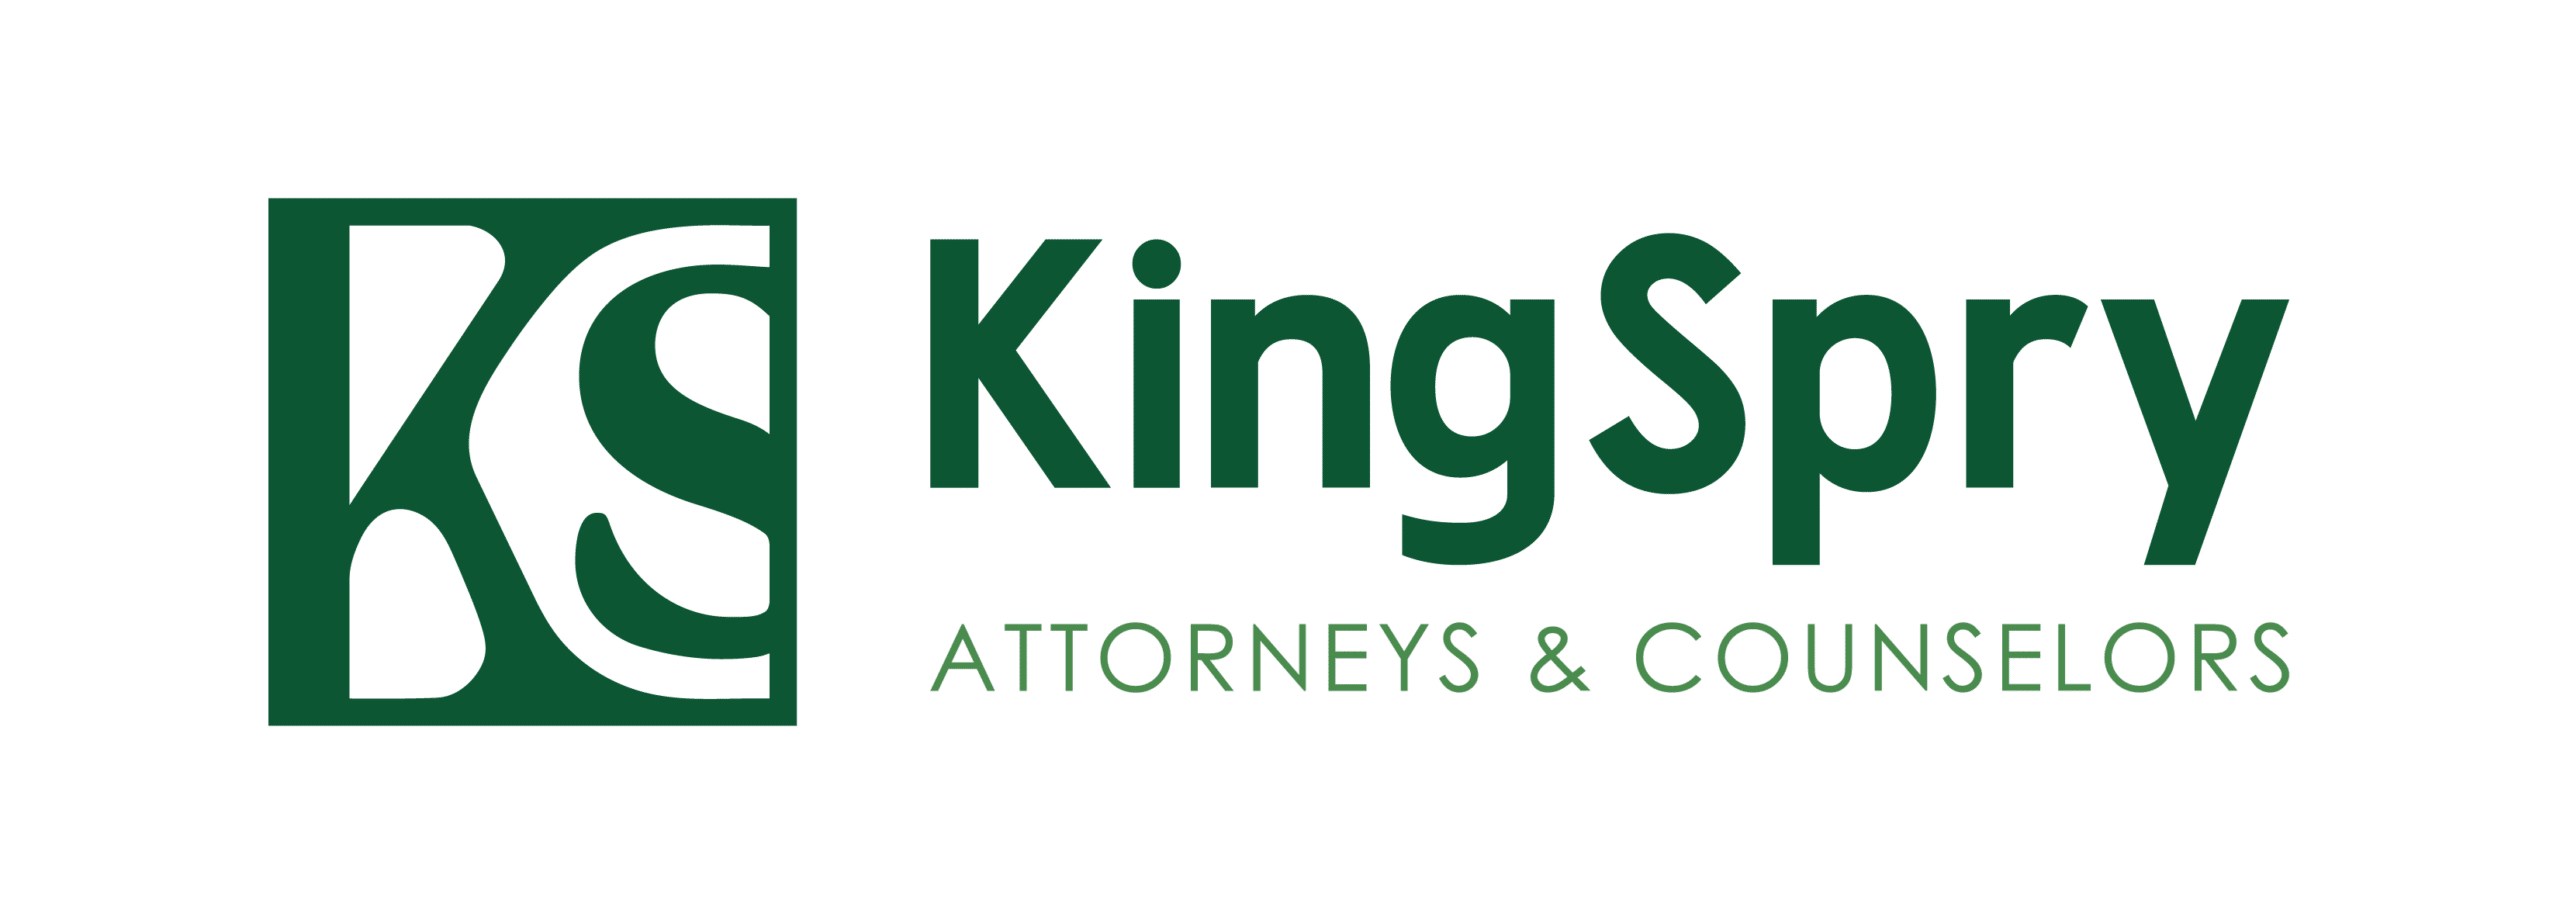 king spry logo